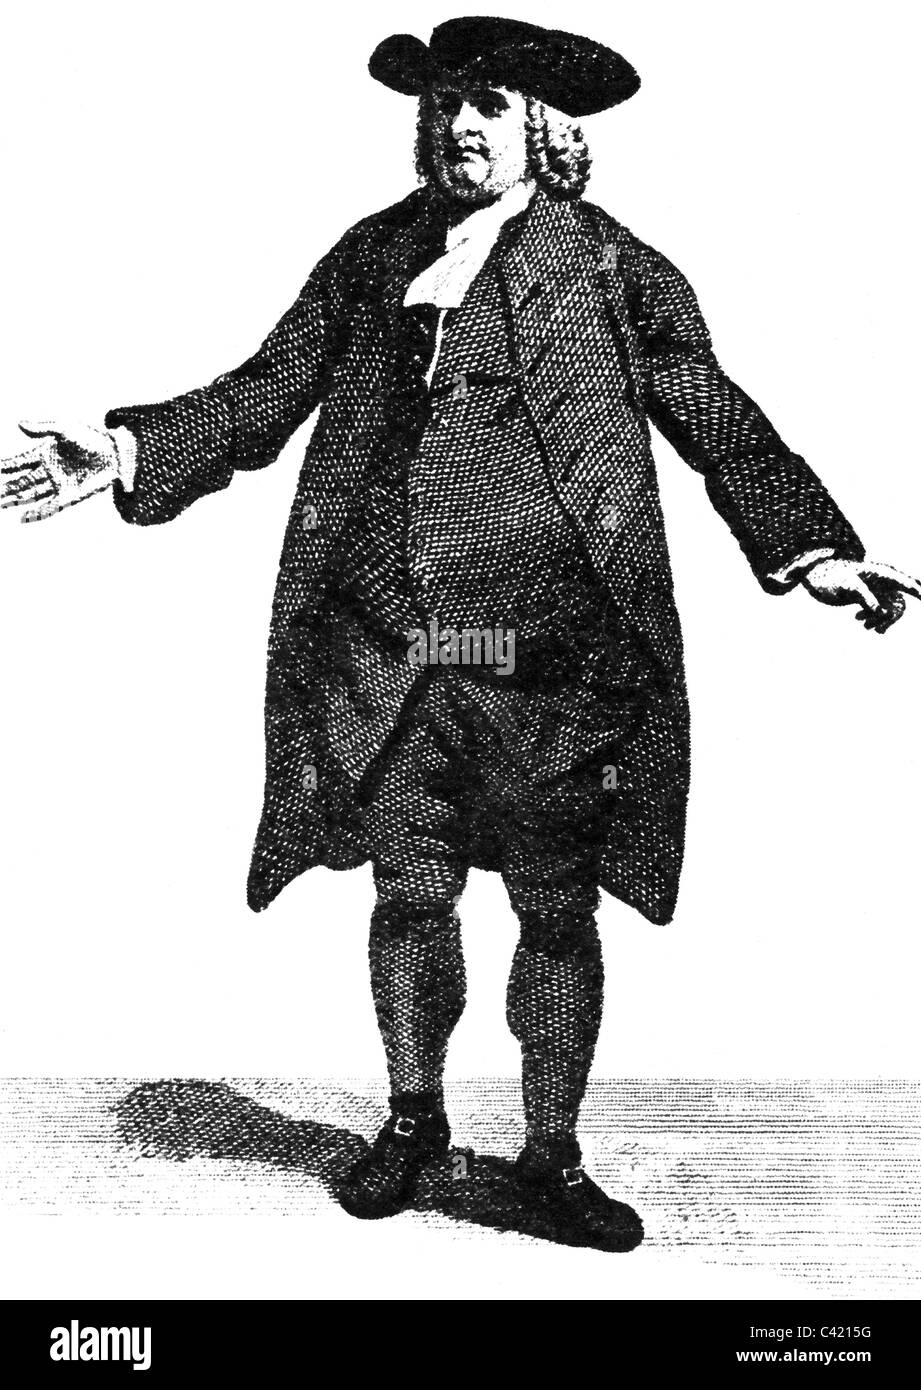 Penn, William, 14.10.1644 - 30.7.1718, politicien anglais, Quaker, fondateur de Pennsylvanie, pleine longueur, gravure sur bois, XIXe siècle, Banque D'Images